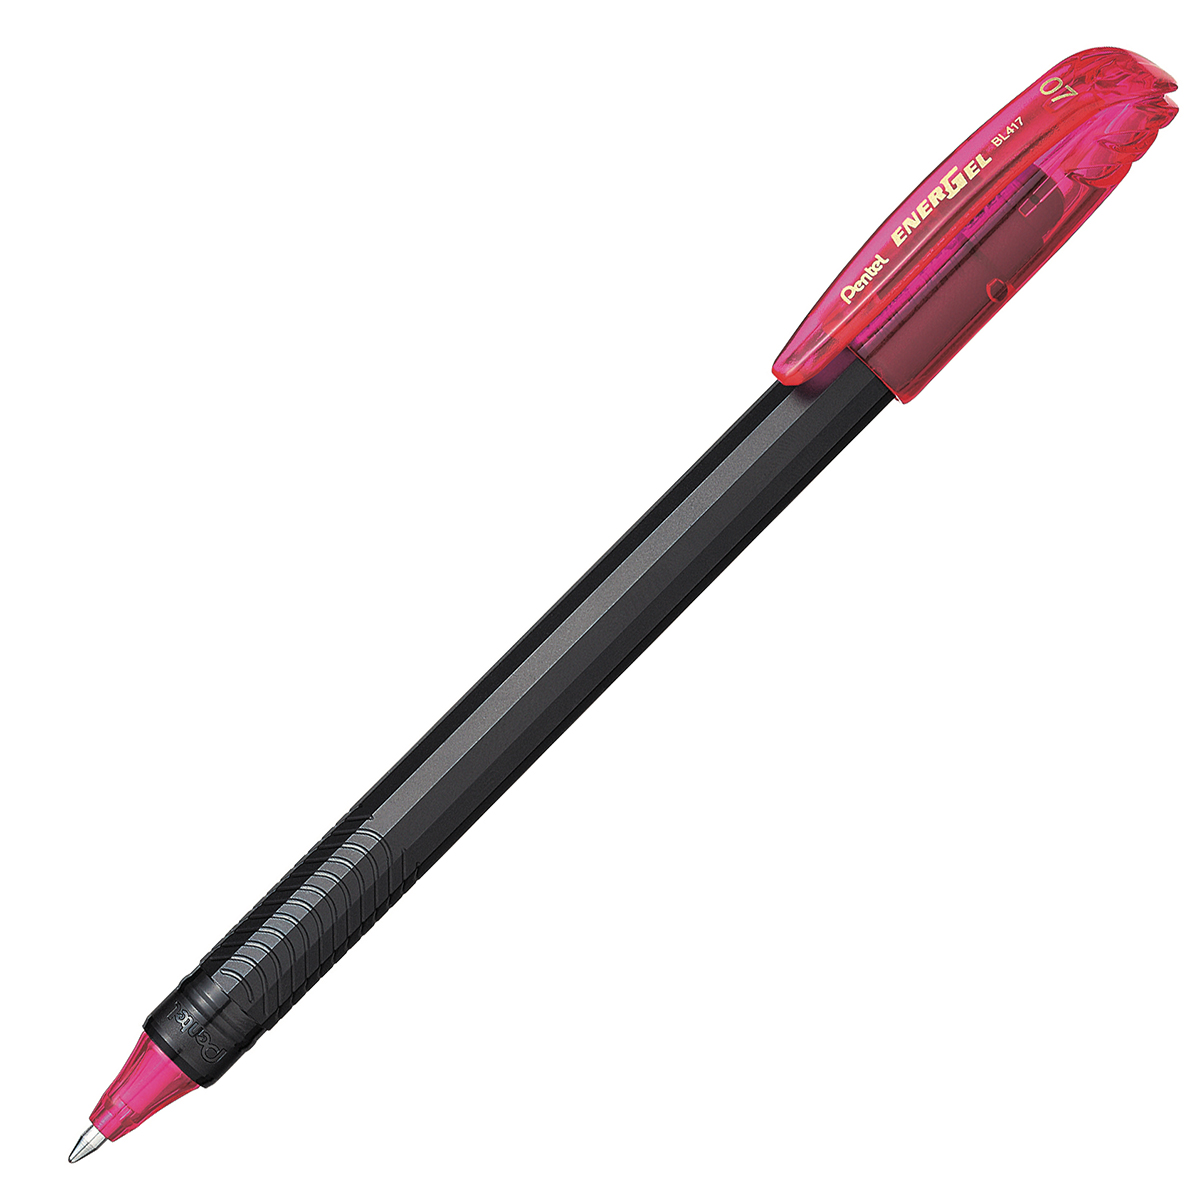 Bolígrafo Pentel energel stick, punto 0. Bolígrafo Pentel energel tinta gel color rosa, 0.7 mm secado rápido, peso ligero con 12 lados, hecho de 62% material reciclado. la tapa indica el color de la tinta                                                                                             7 mm (mediano), tinta rosa, 1 pieza      - BL417-P